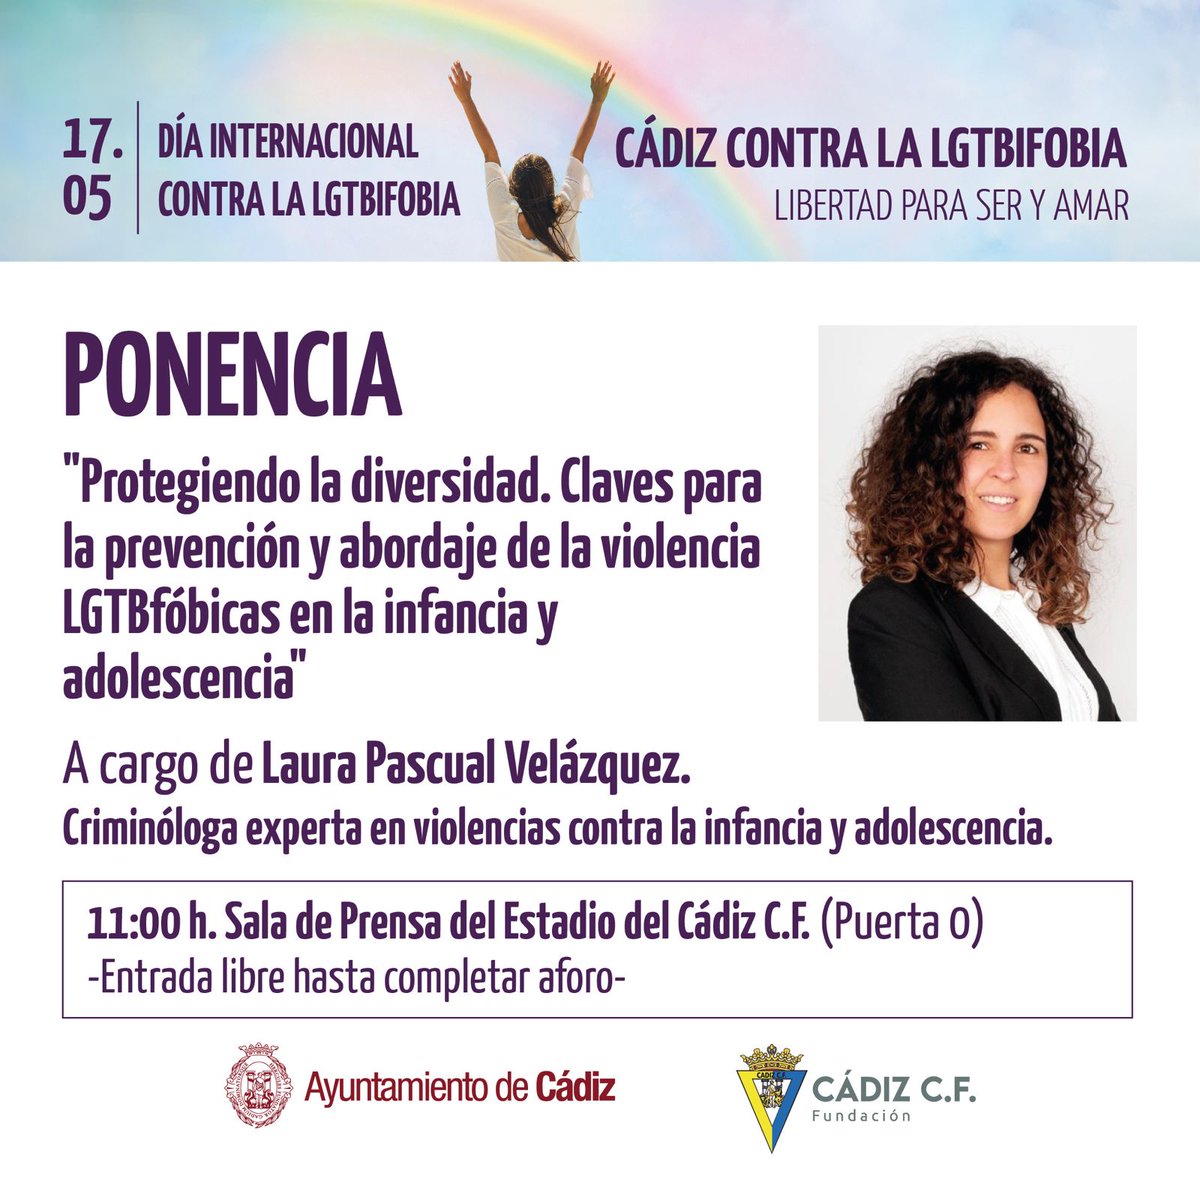 📅 Mañana viernes a las 11 horas en la sala de prensa del estadio del @Cadiz_CF @Cadiz_Fundacion ✅ #Cádiz contra la #LGTBiFobia